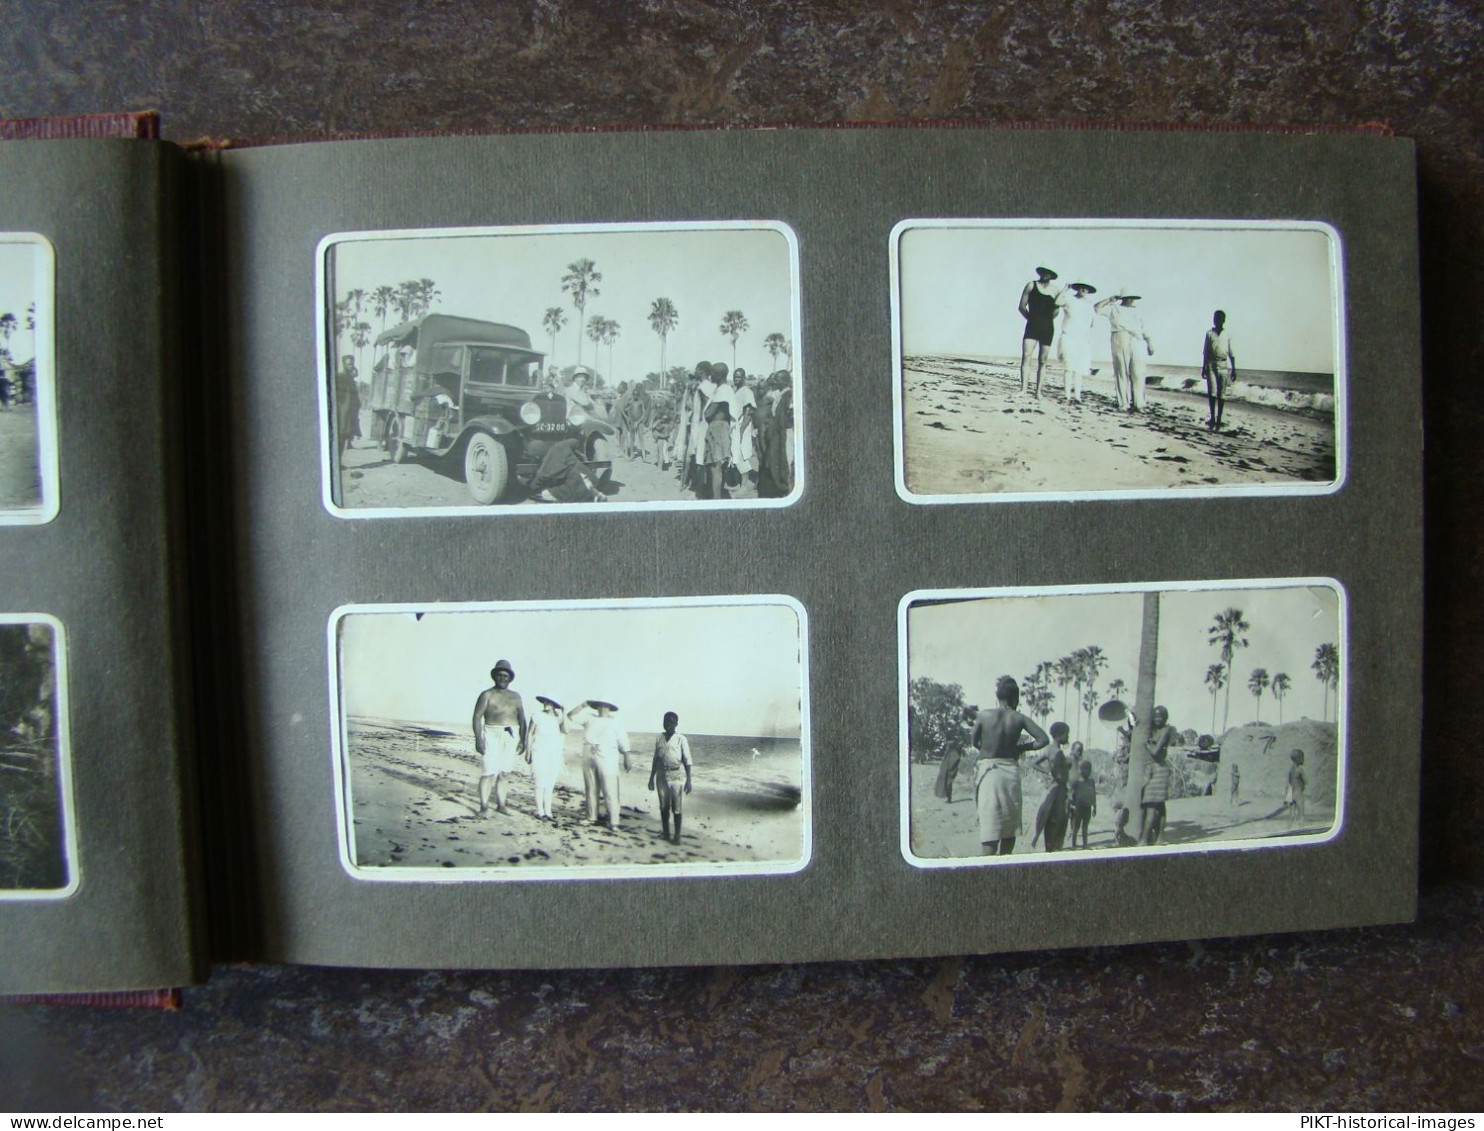 ALBUM PHOTOS ANCIEN SÉNÉGAL 1928 CHAUFFEUR TAXI-BROUSSE CAMION CHEVROLET DAKAR +100 PHOTOGRAPHIES AFRIQUE COLONIE